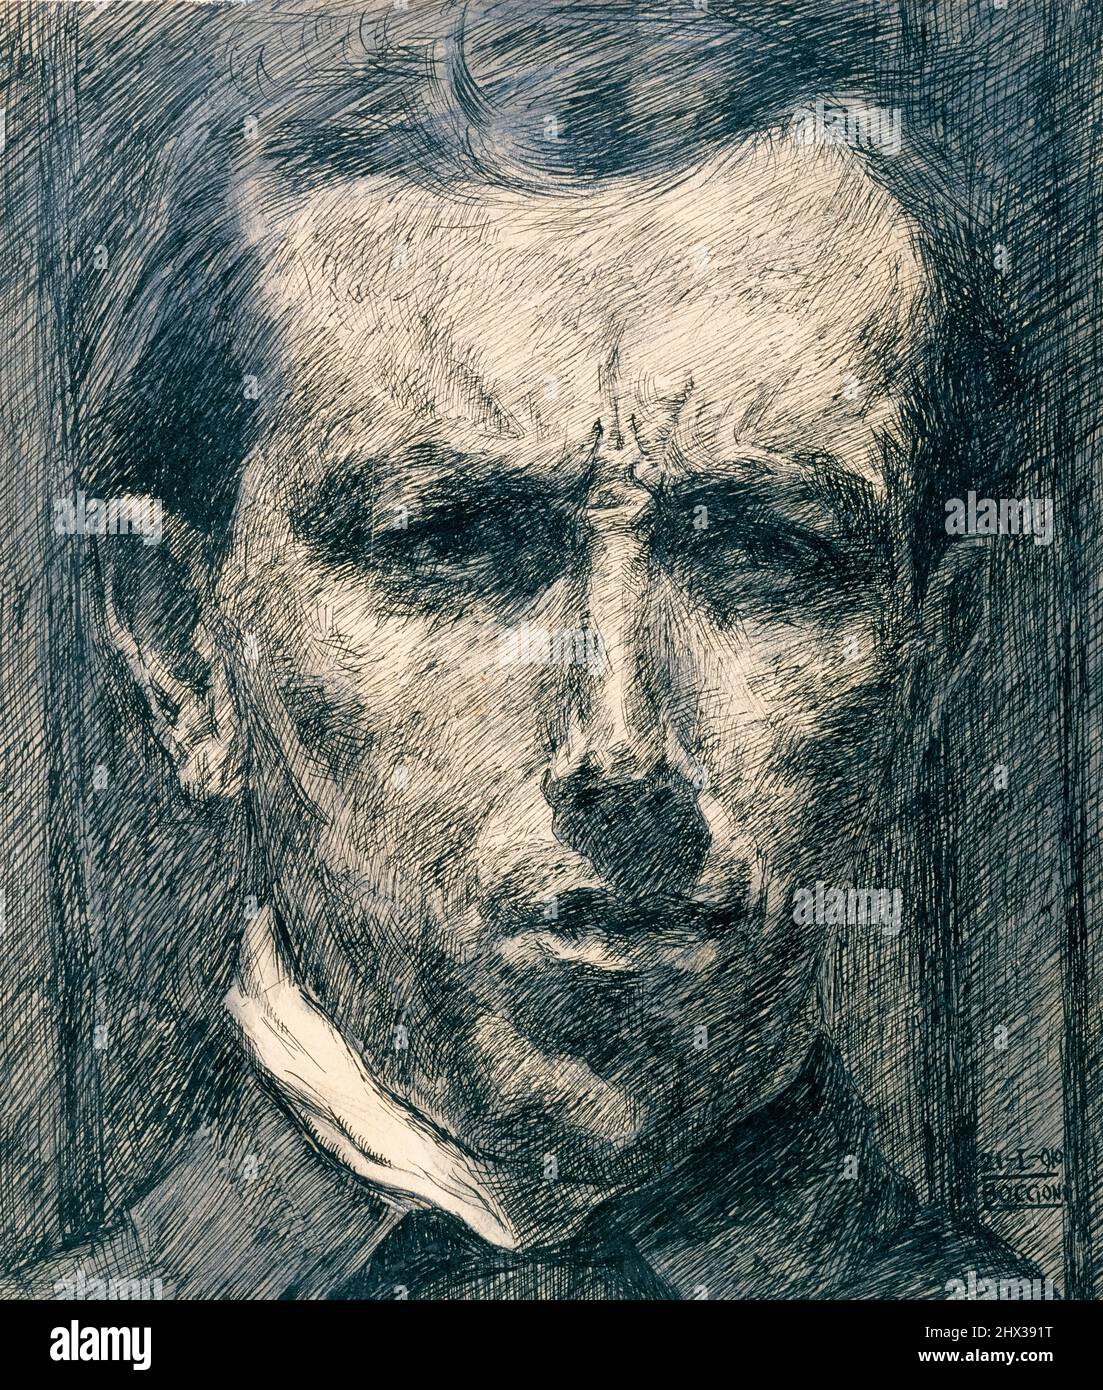 Umberto Boccioni (1882-1916) Autoritratto del pittore e scultore futurista italiano, disegno a inchiostro con lavaggio e grafite su carta, 1910 Foto Stock